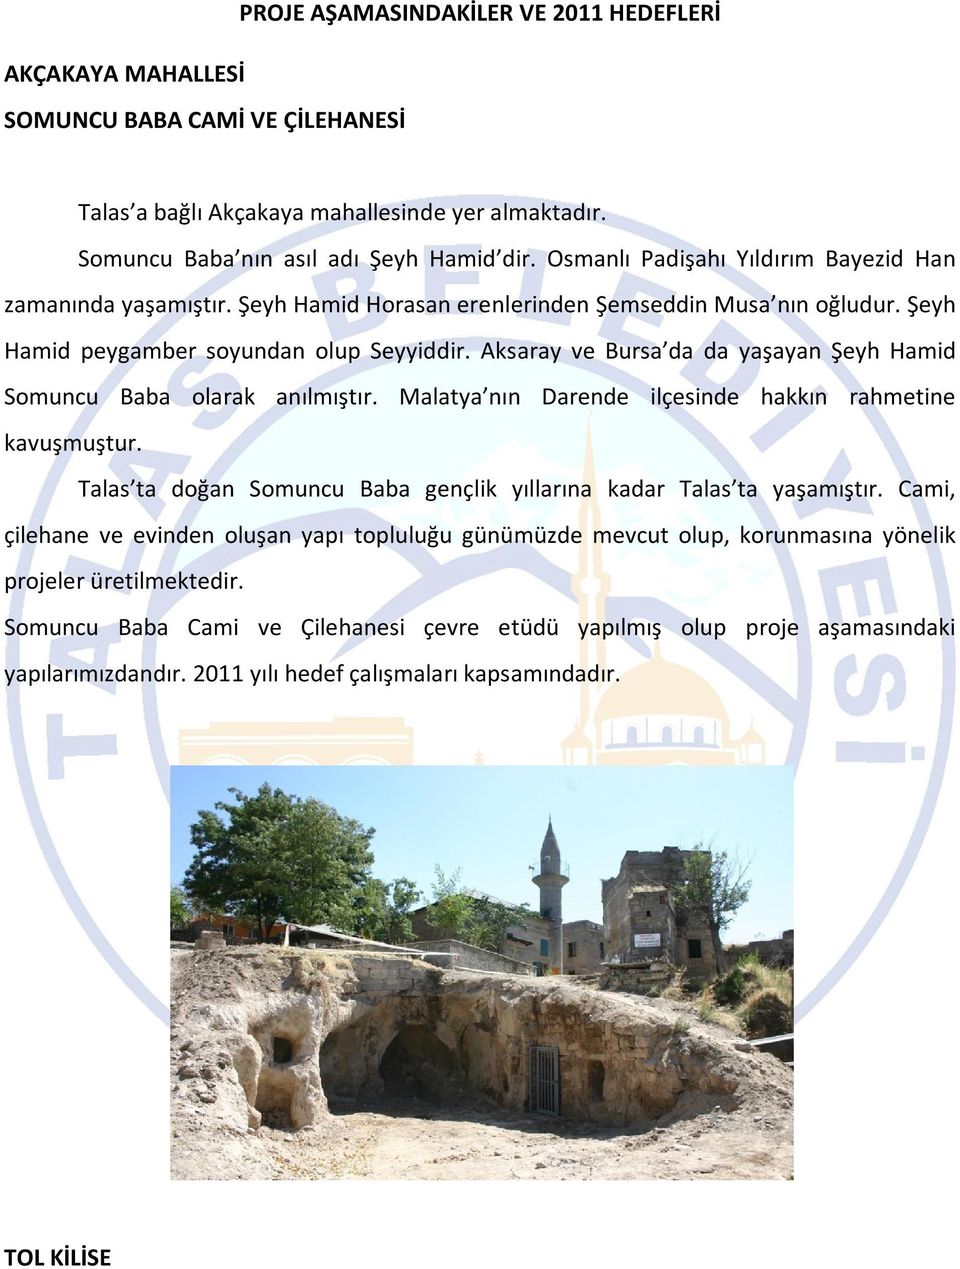 Aksaray ve Bursa da da yaşayan Şeyh Hamid Somuncu Baba olarak anılmıştır. Malatya nın Darende ilçesinde hakkın rahmetine kavuşmuştur.